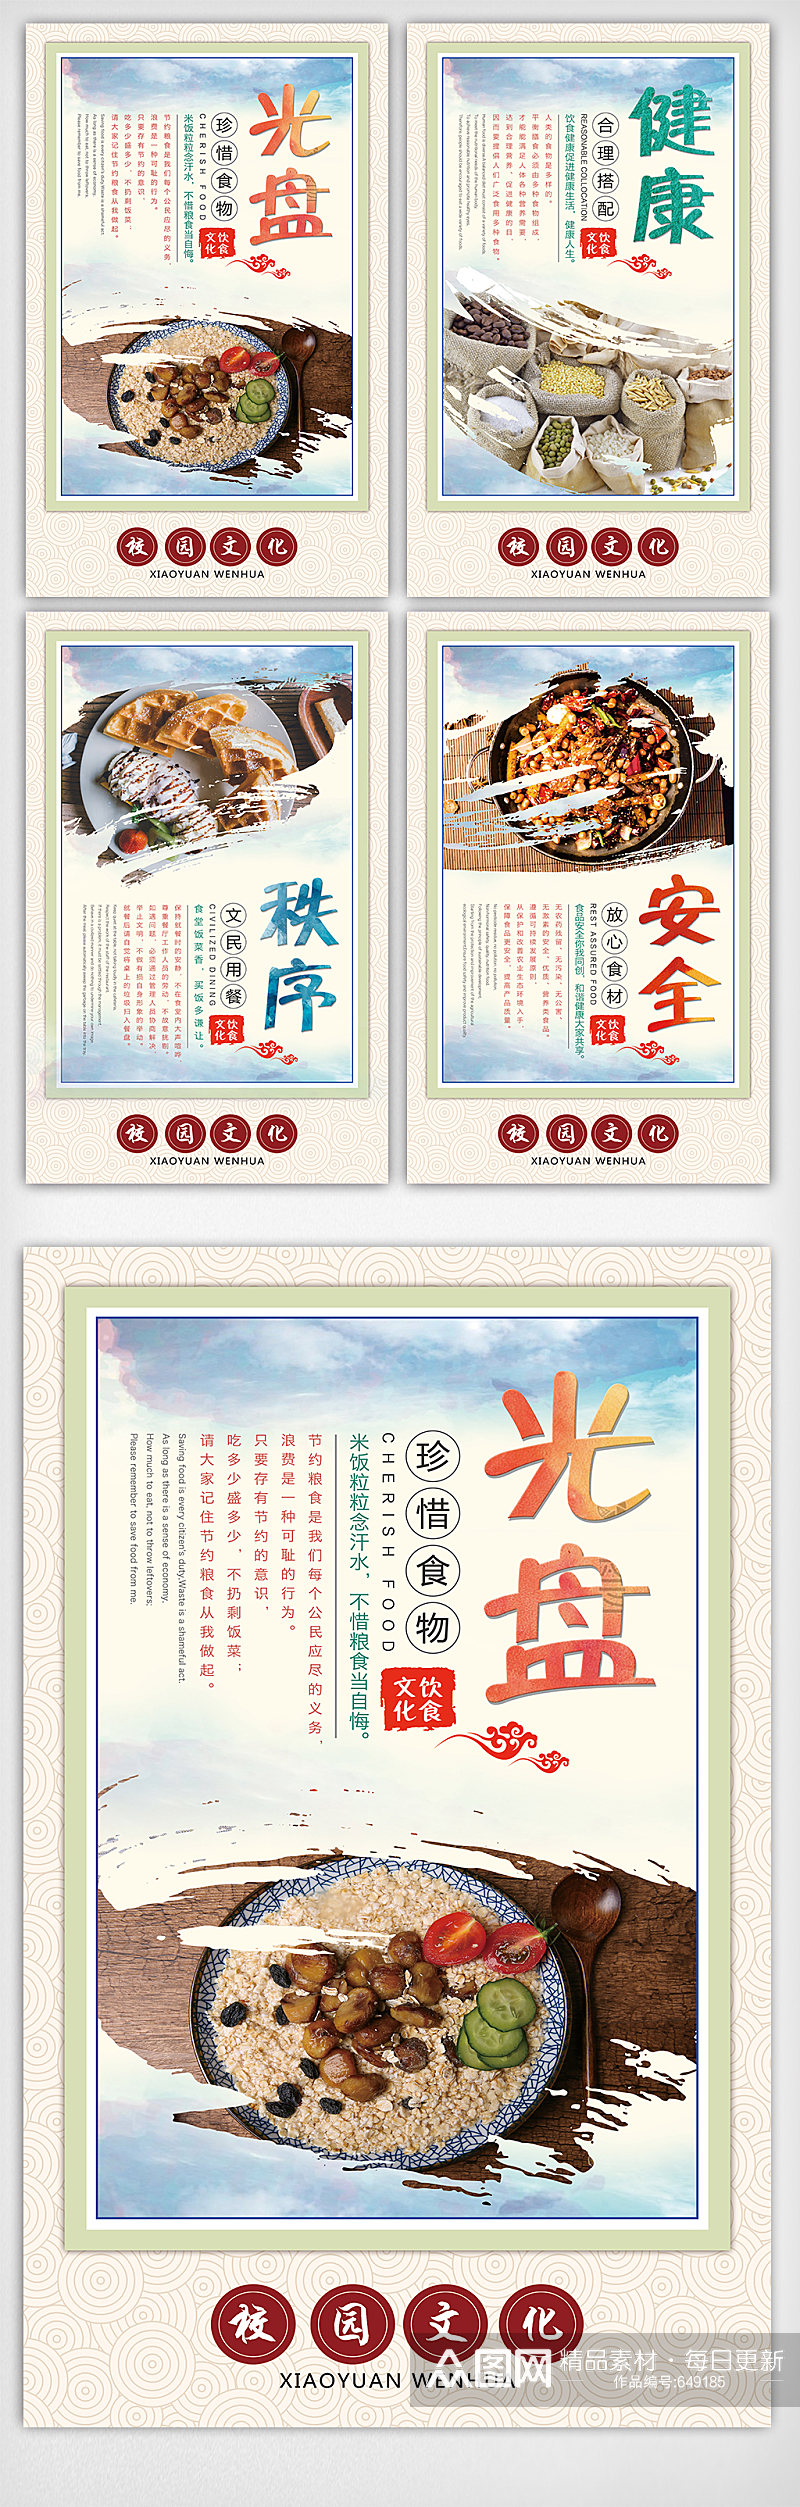 中国风光盘行动校园食堂文化展板挂画套图素材